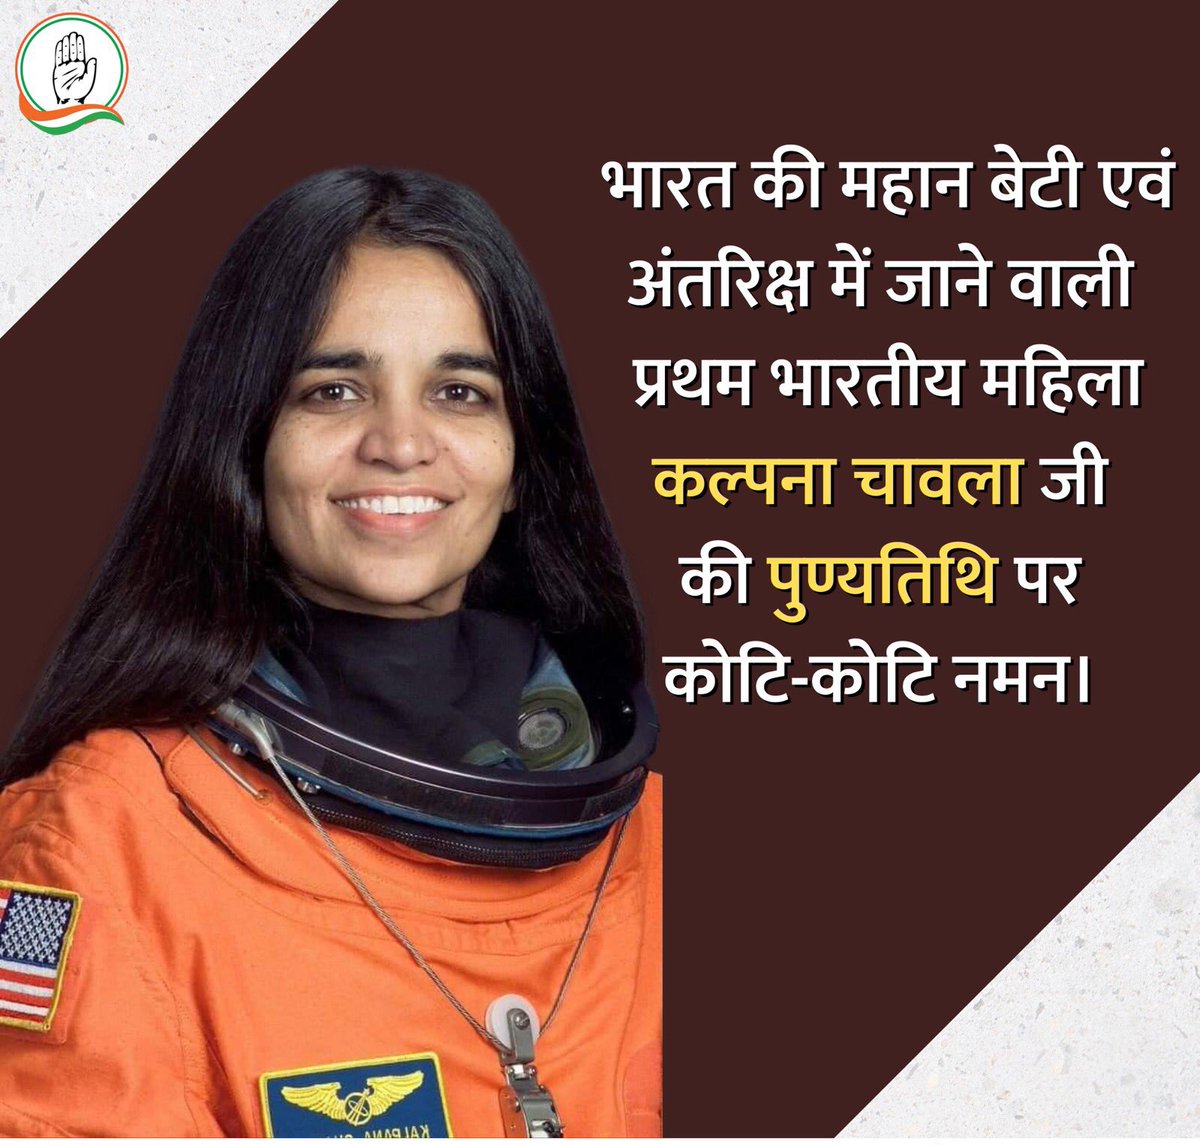 पूरे विश्व मे देश का मान बढ़ाने वाली प्रथम भारतीय महिला अंतरिक्ष यात्री कल्पना चावला जी की पुण्यतिथि पर उन्हें सादर नमन करती हूँ..!! 💐

उनका दृढ़ संकल्प और इच्छाशक्ति महिलाओं एवं युवाओं के लिए प्रेरणादायी है...!! #कल्पनाचावला #KalpanaChawla